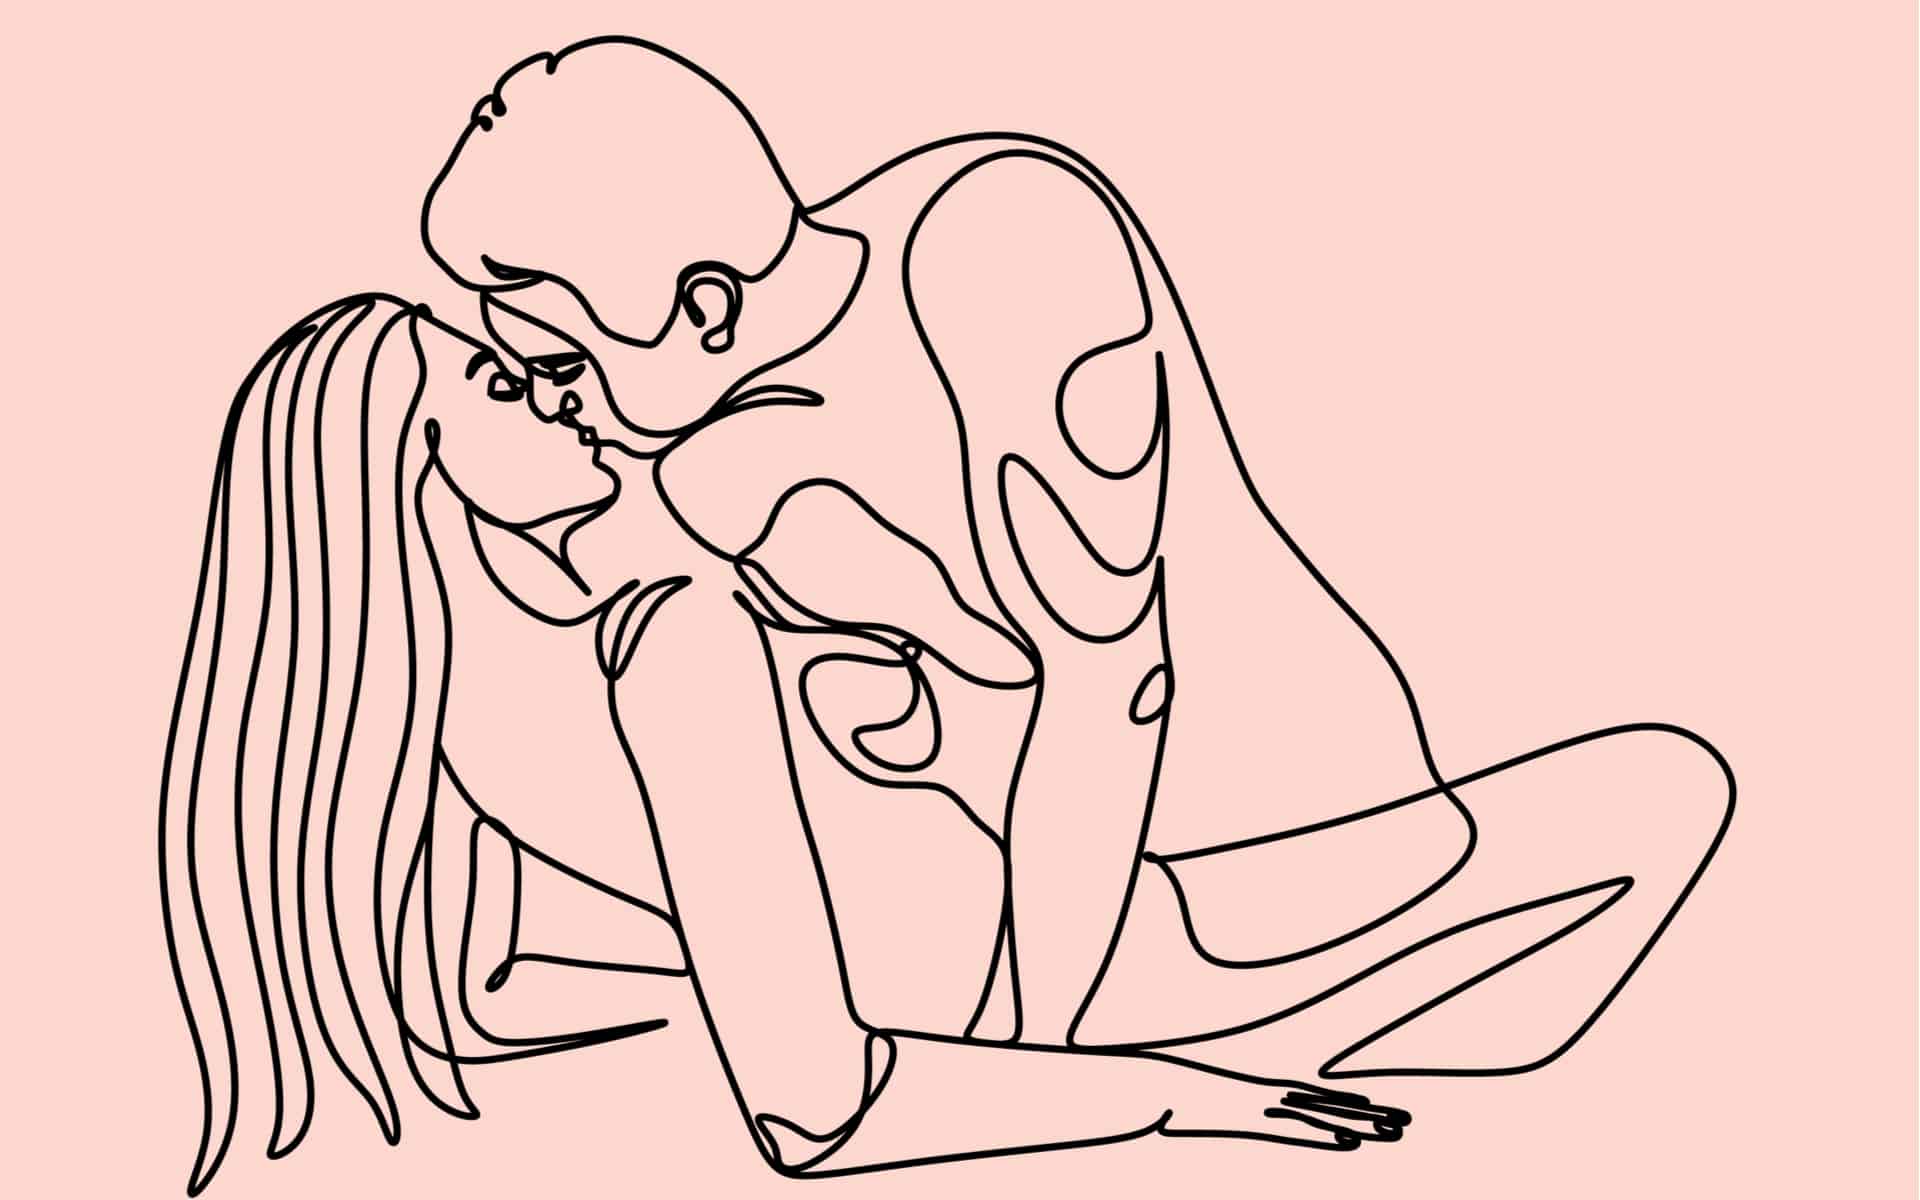 ilustracion lineas de pareja en fondo rosa